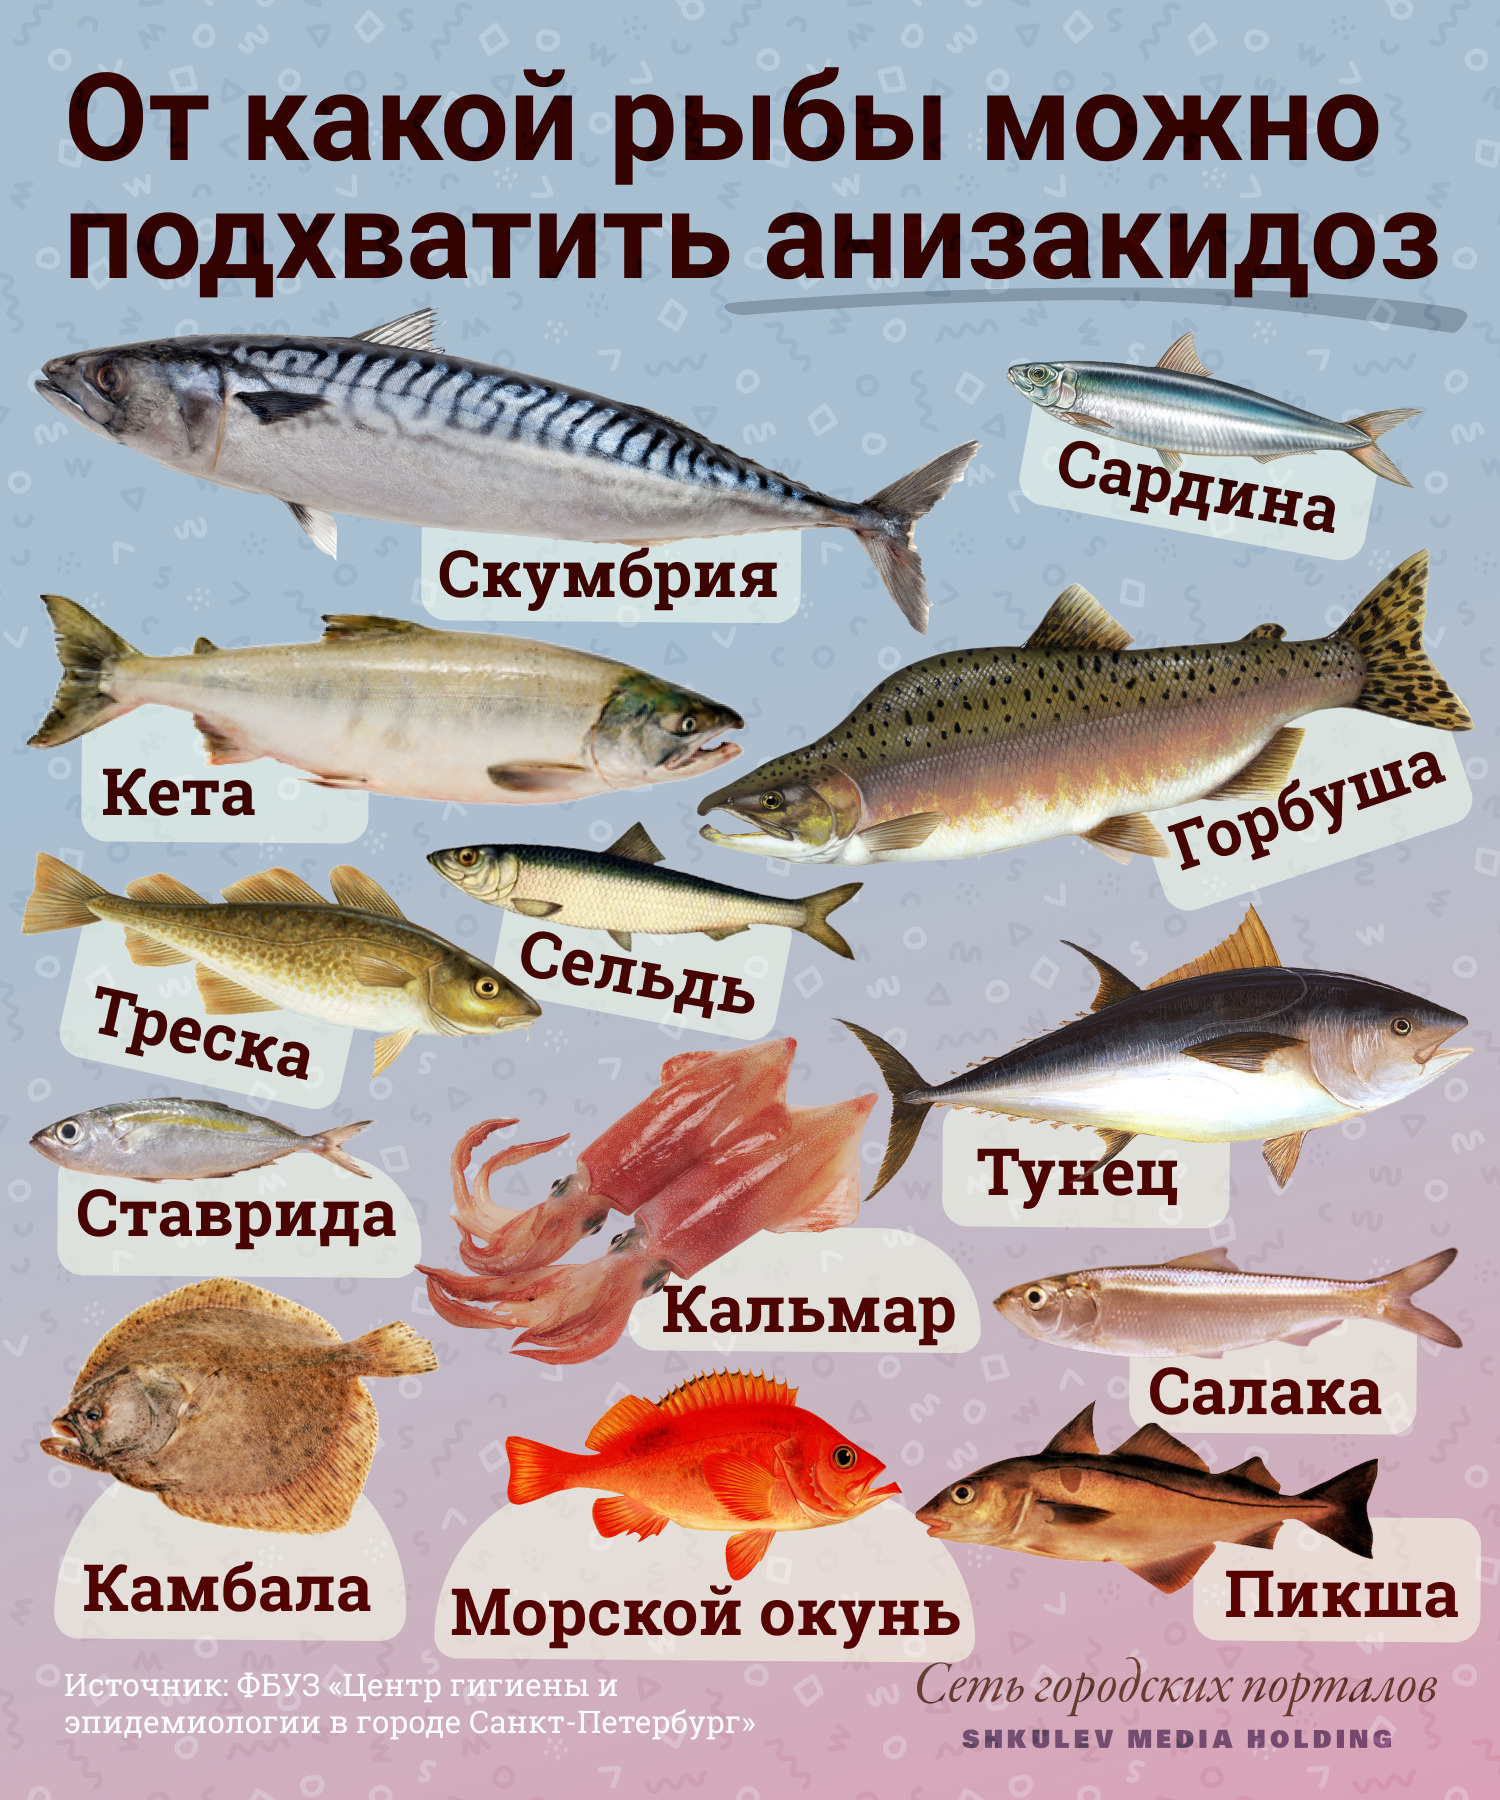 Опасная рыба (анизакидоз)